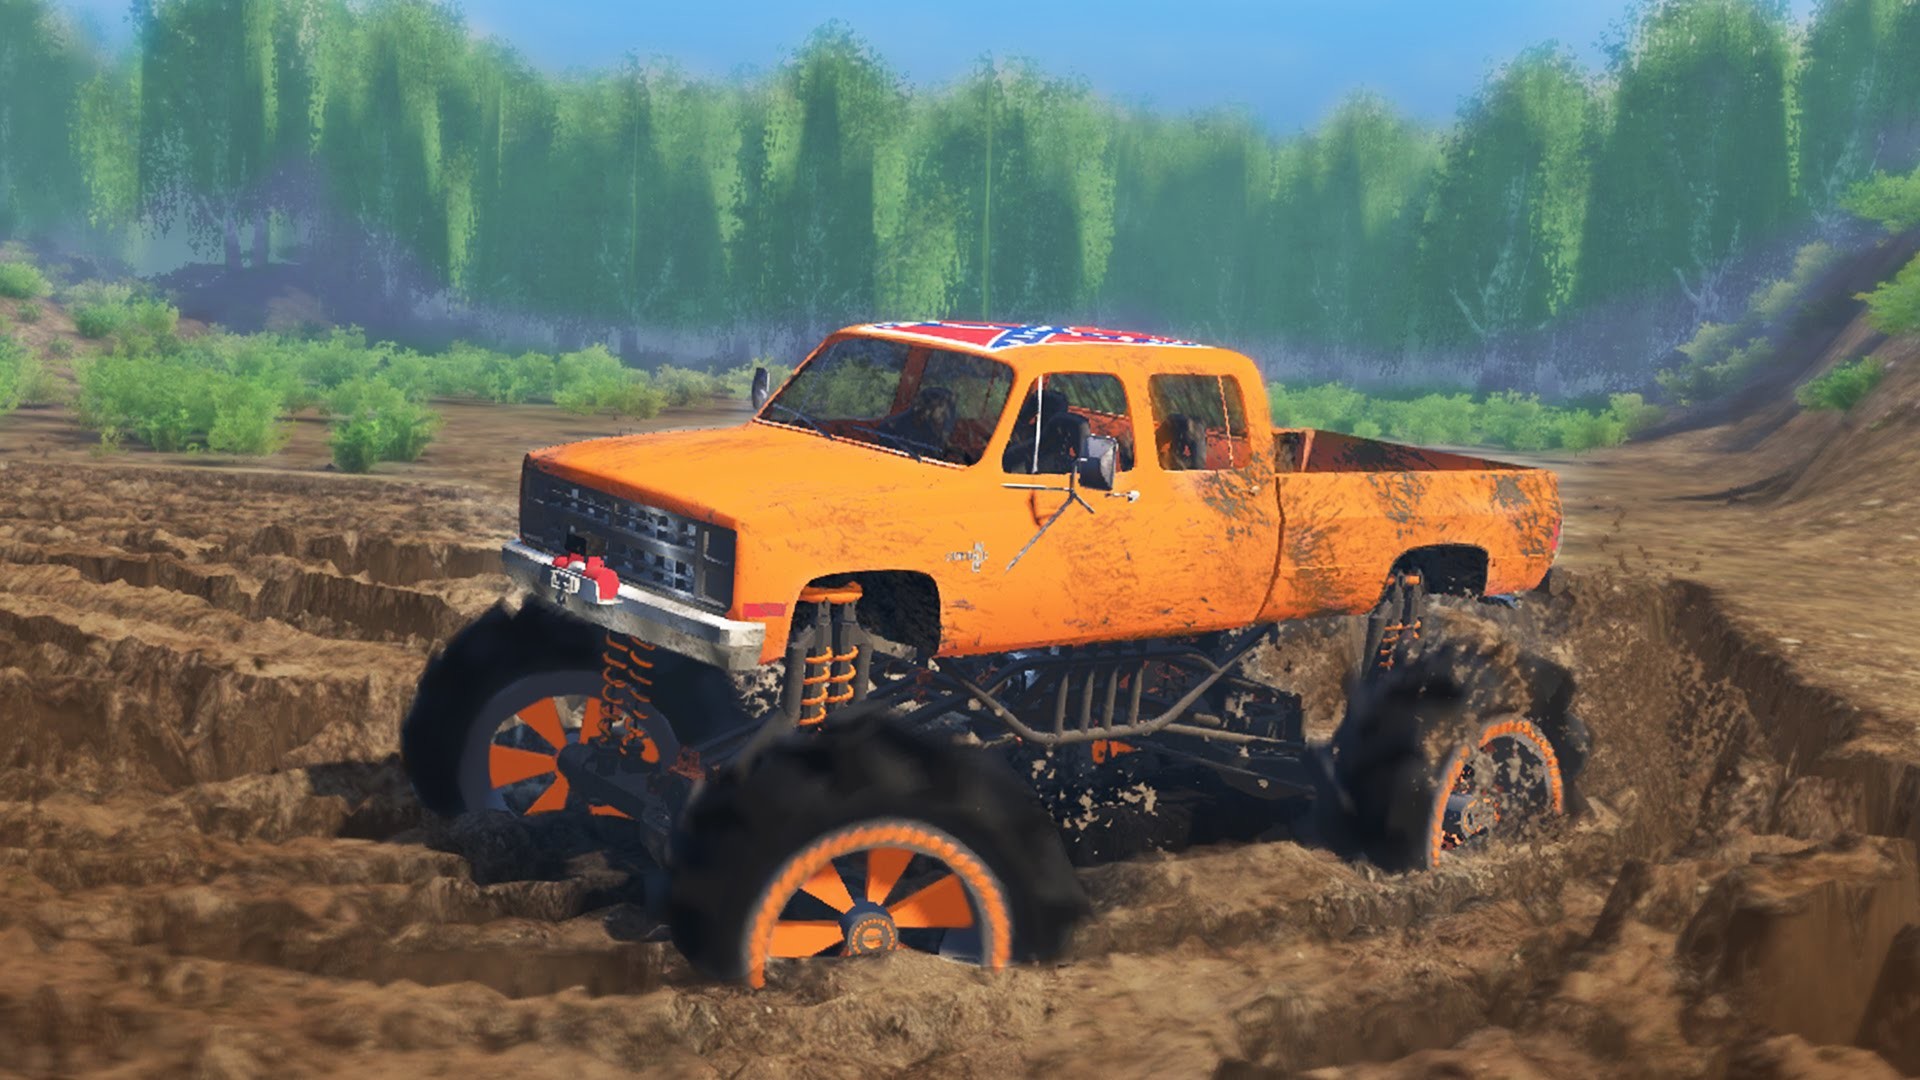 Mud Trucks Wallpaper.